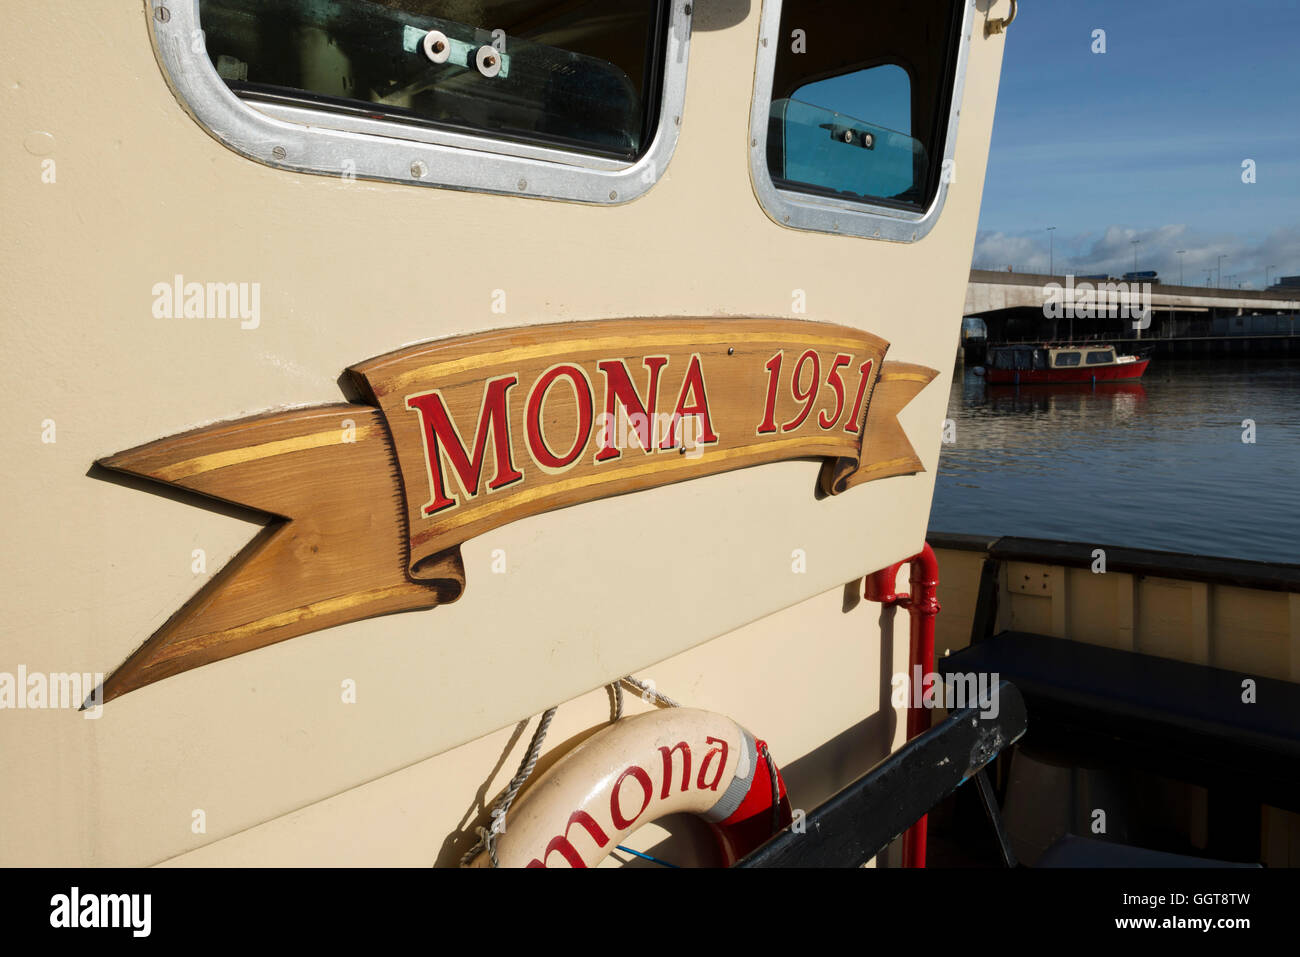 La barca Mona 1951 sul fiume, Belfast Foto Stock